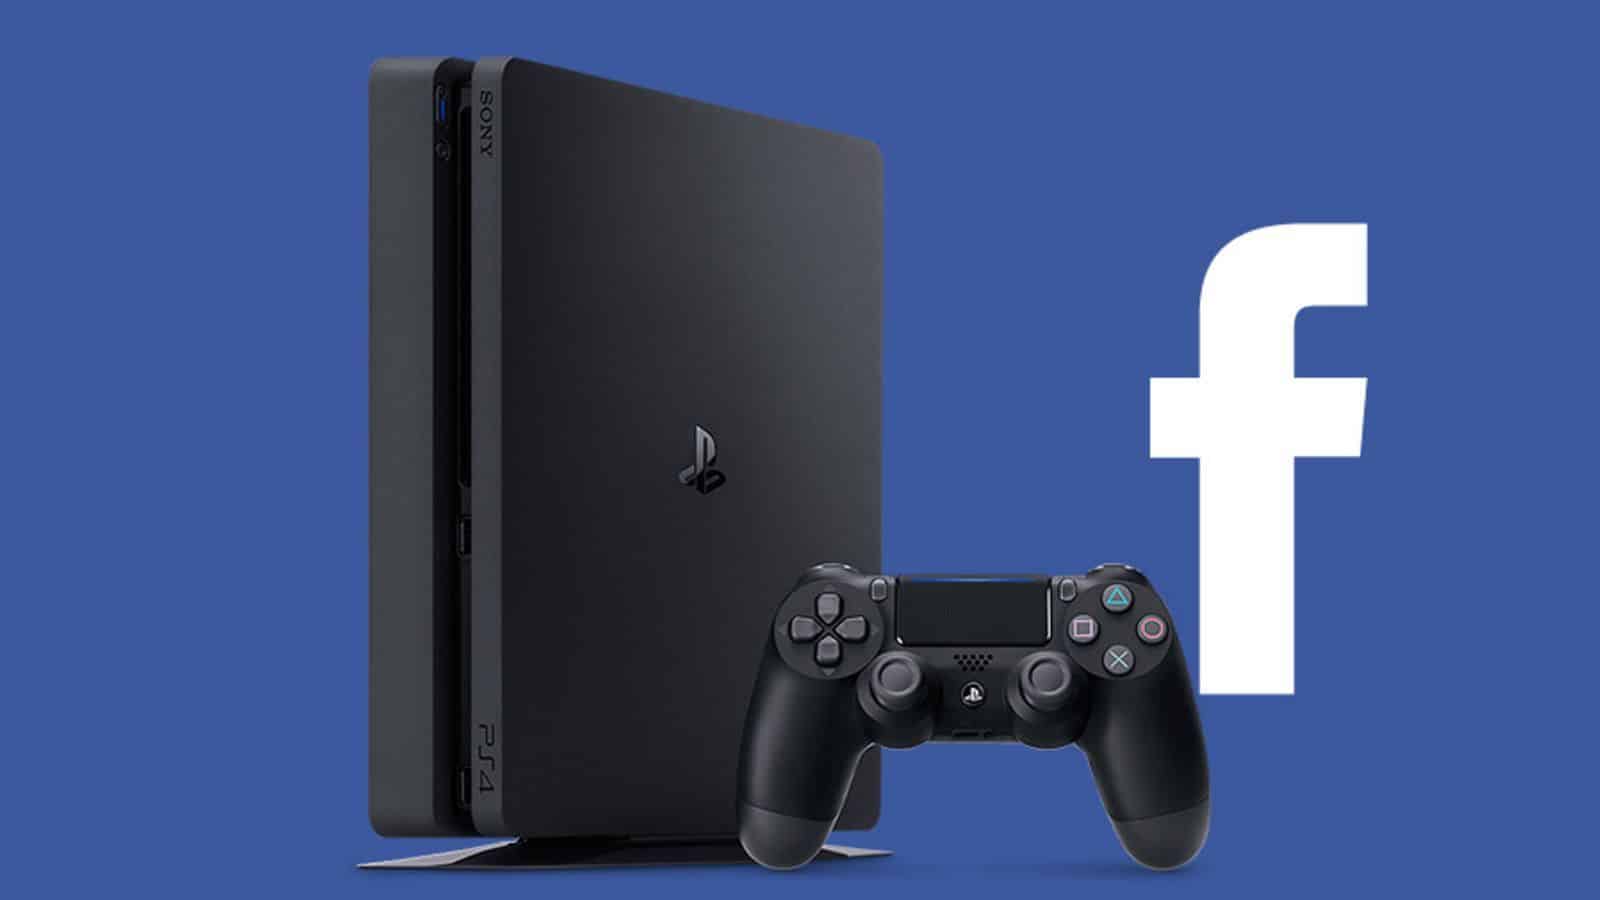 (#StopHateForProfit) Playstation removeu publicidade by Facebook!